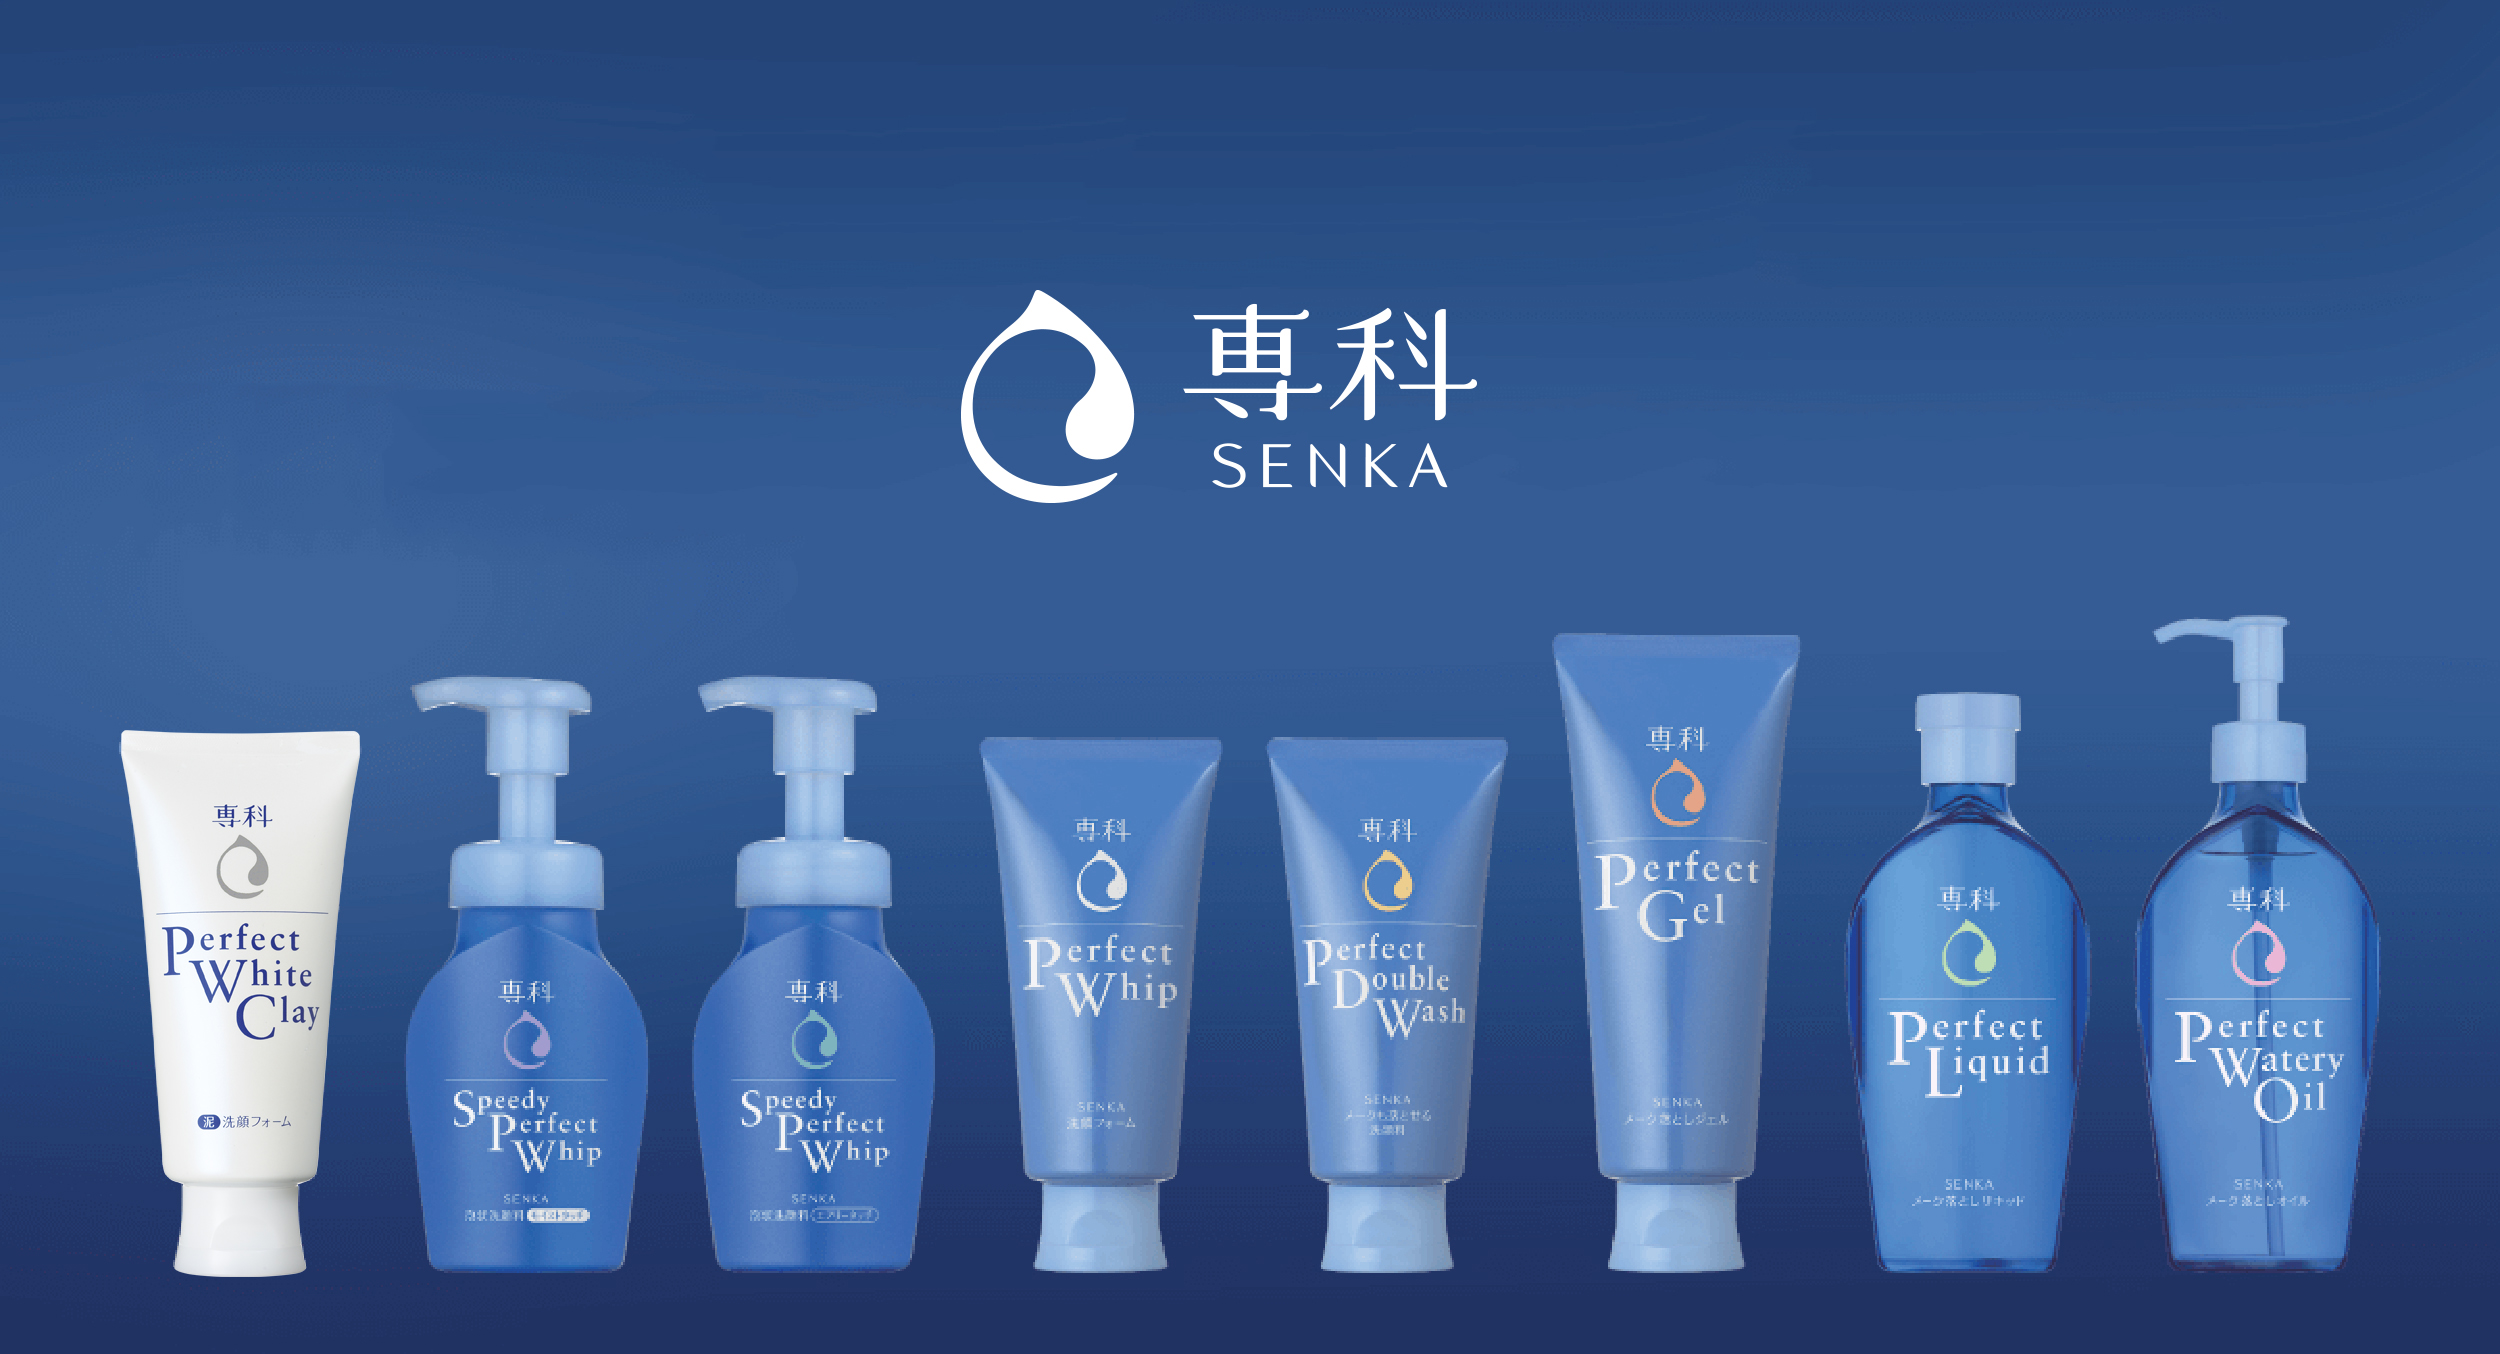 <em>Senka là thương hiệu mỹ phẩm nổi tiếng đến từ Nhật Bản, sản phẩm chủ yếu trong việc chăm sóc da</em>